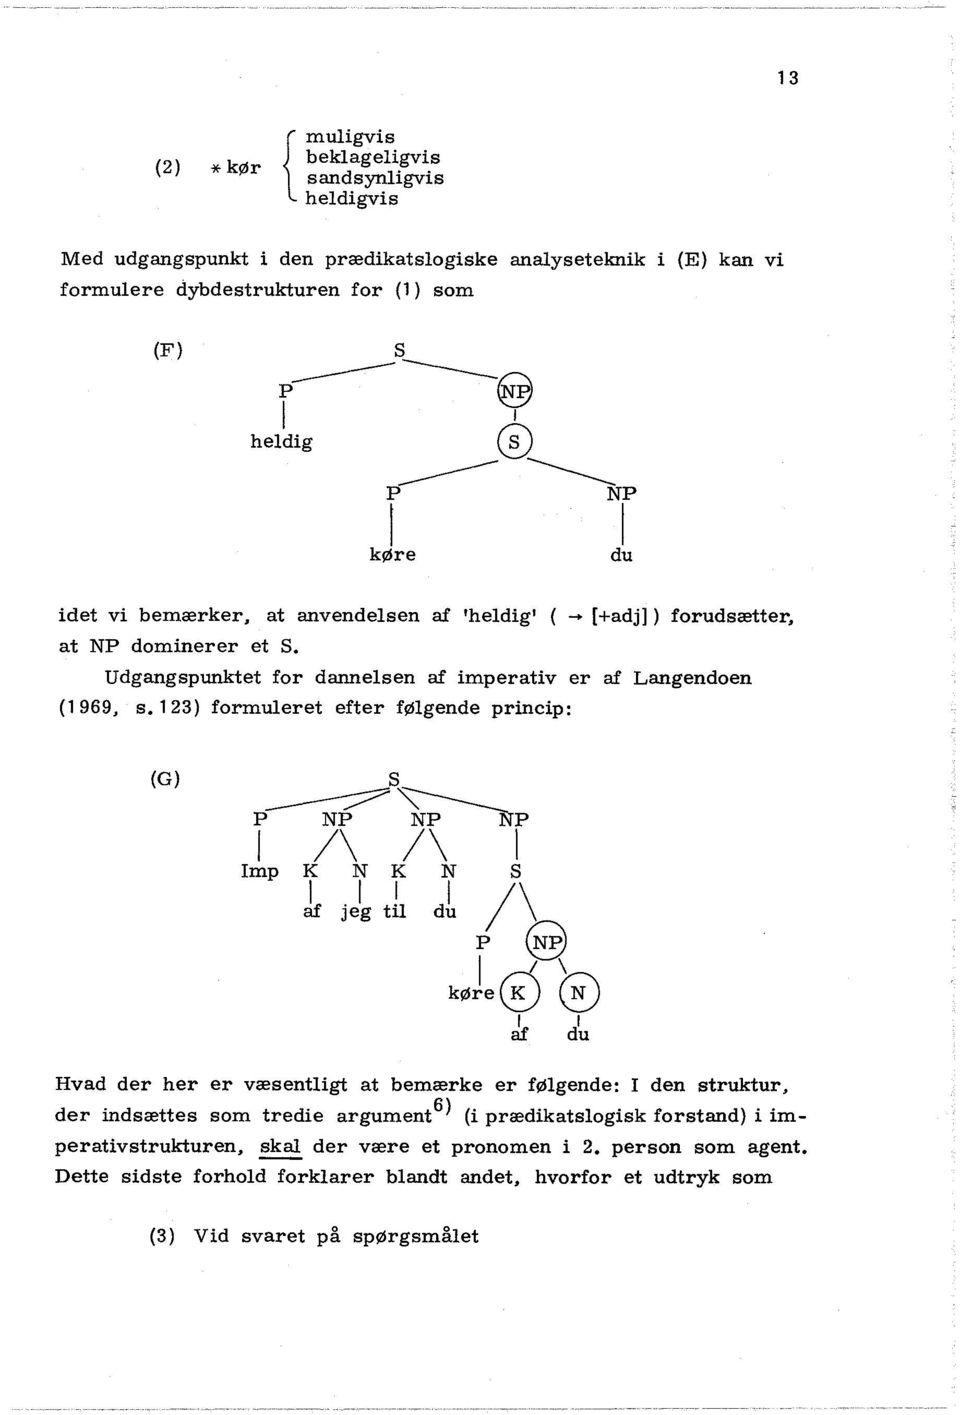 Udgangspunktet for dannesen af imperativ er af Langendaen (1969, s.